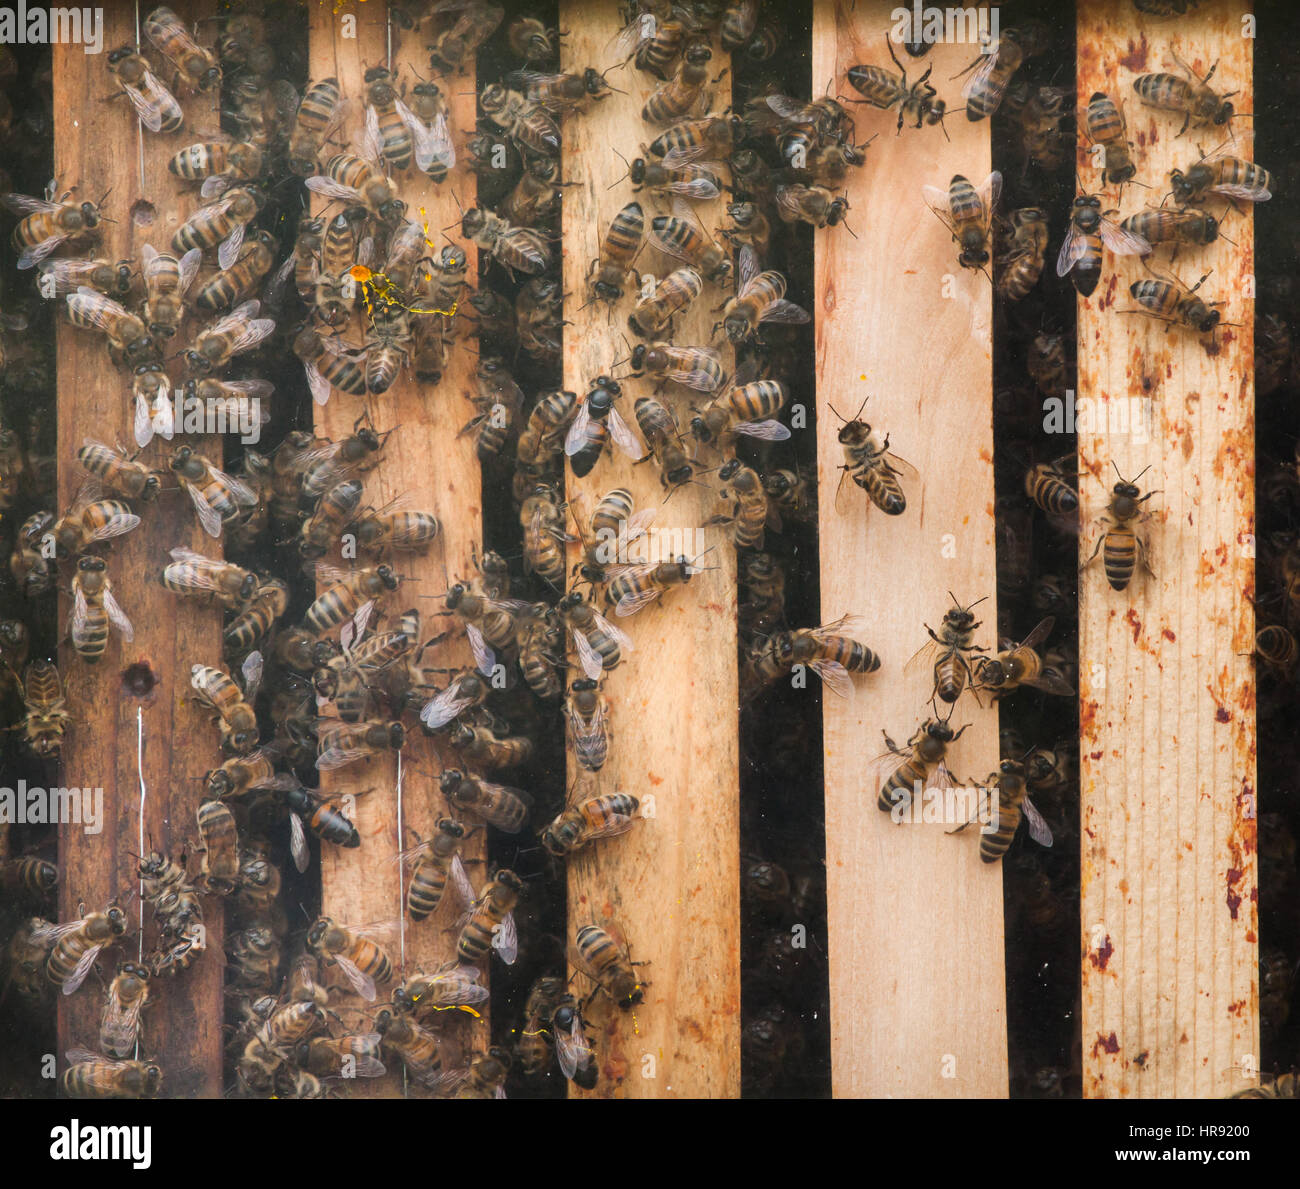 Western de abejas (Apis mellifera), también conocida como la abeja de miel europea. Foto de stock